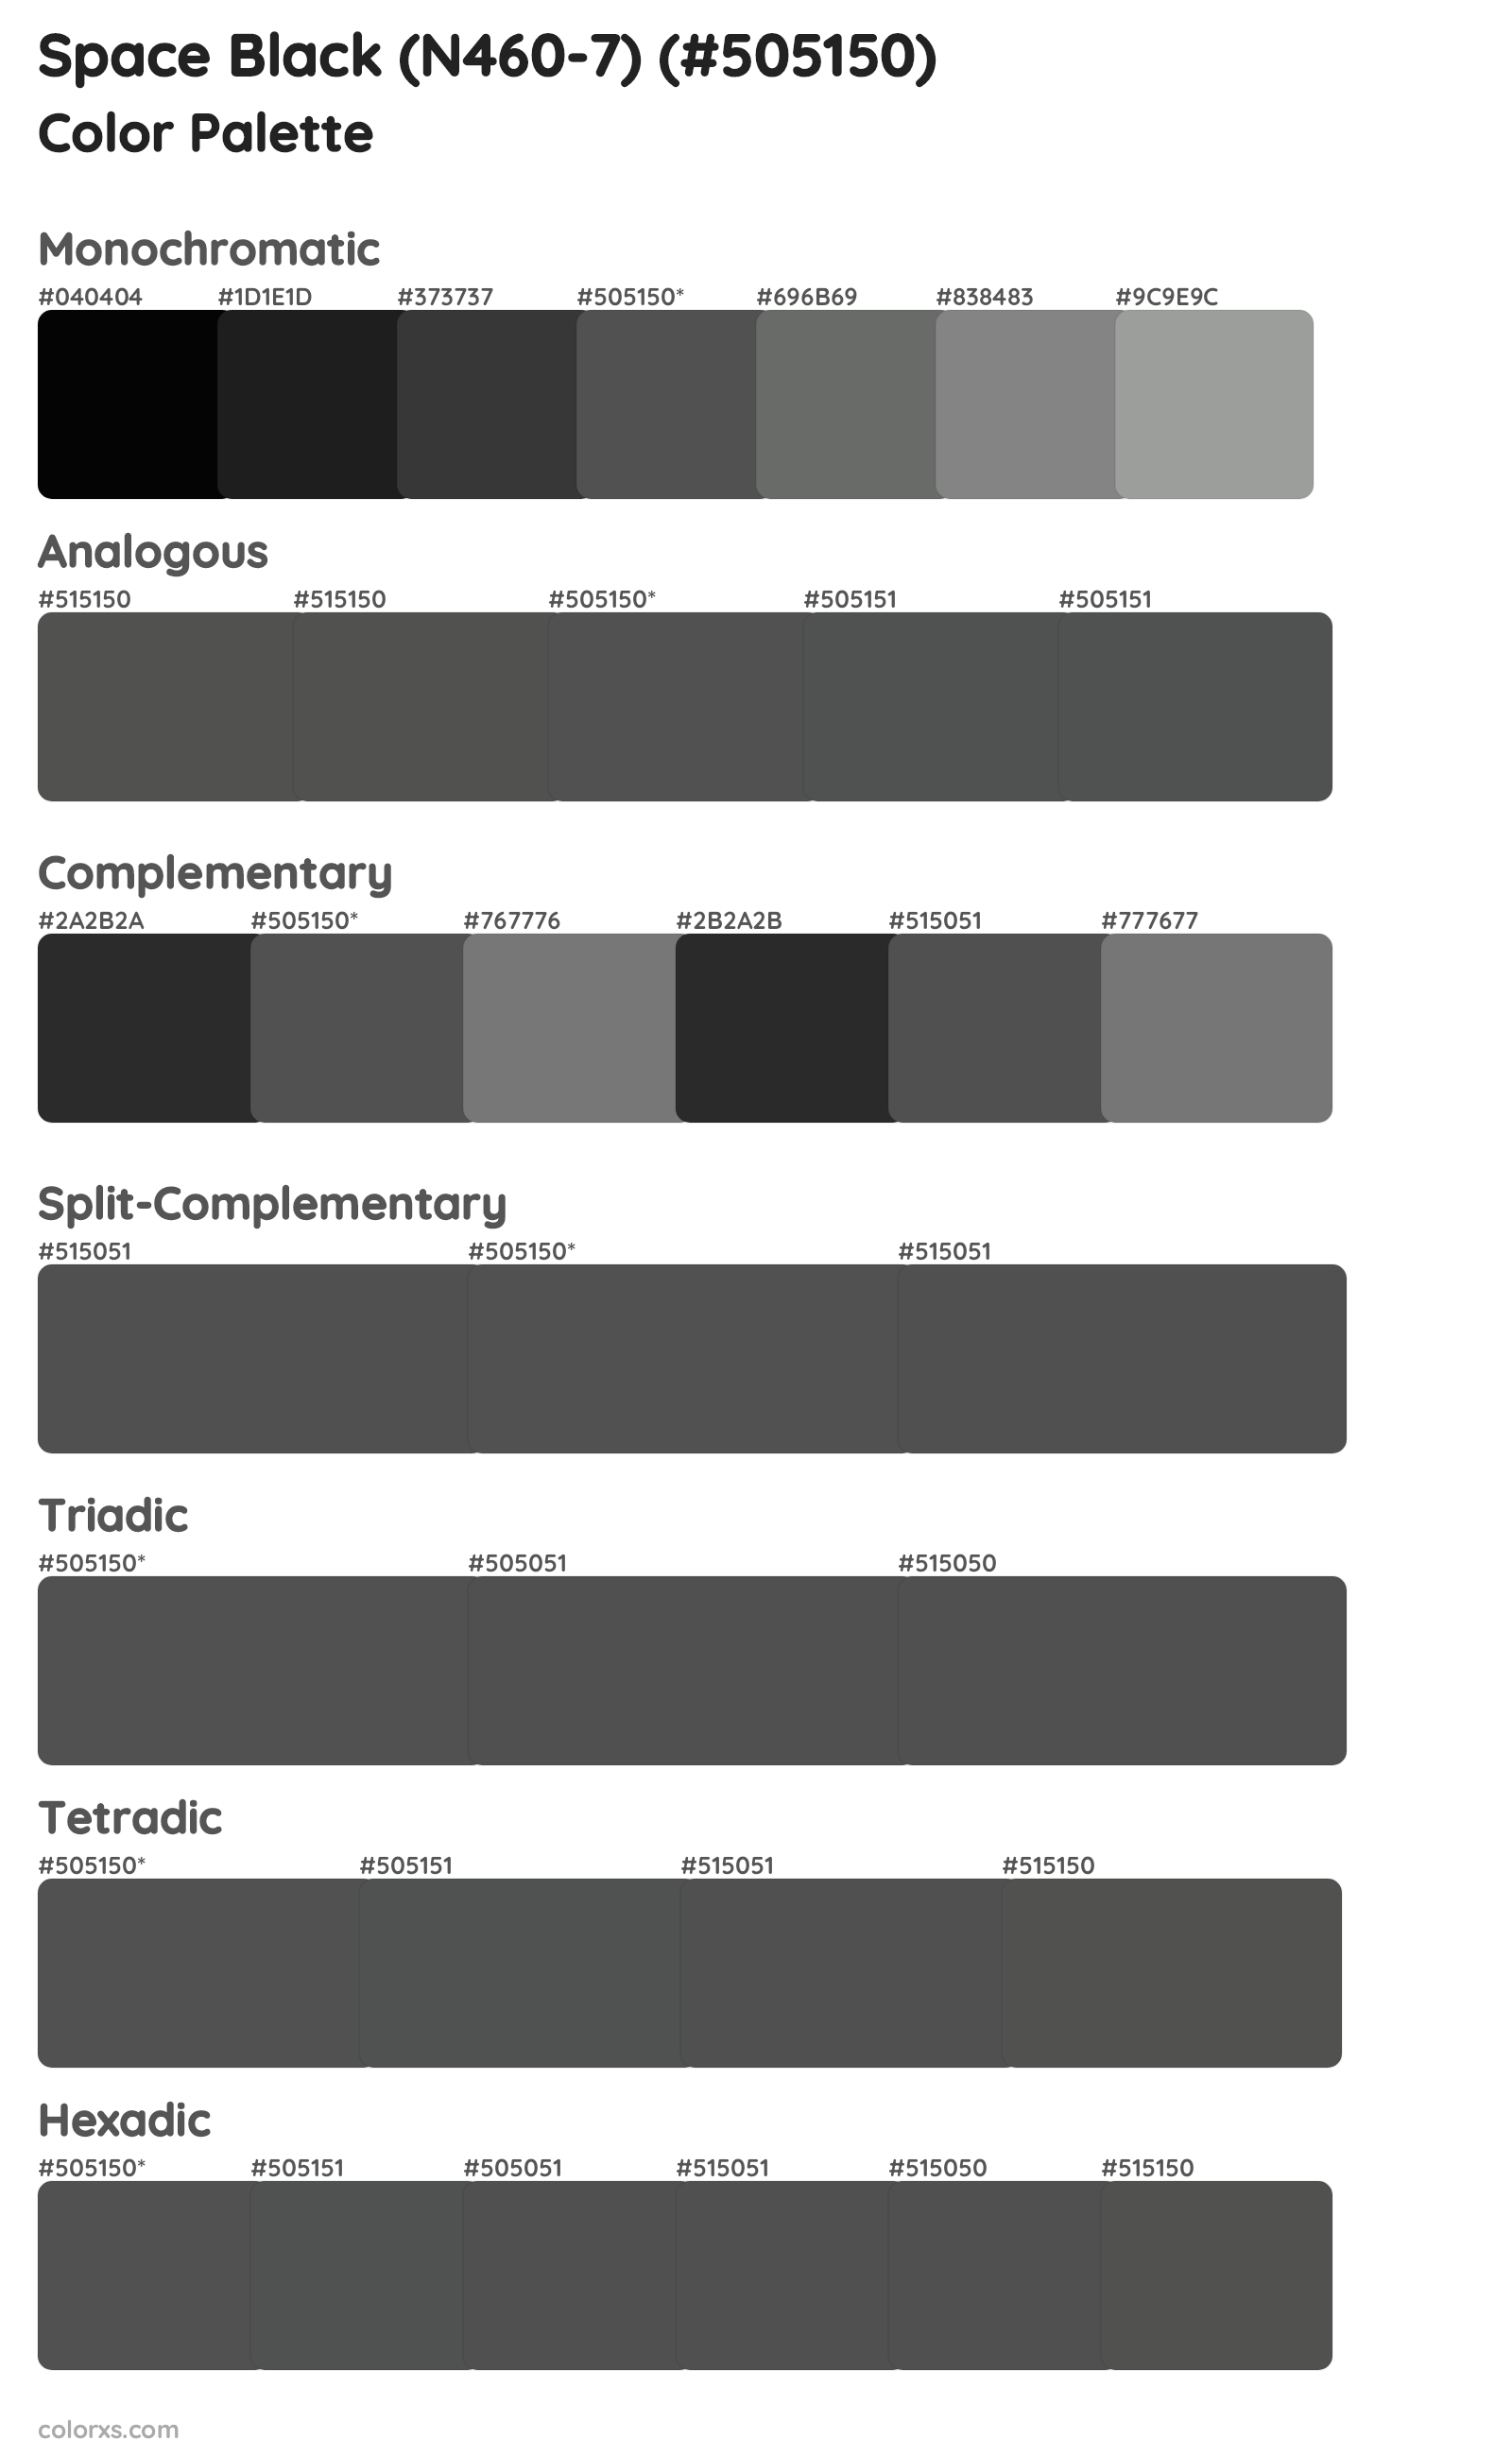 Space Black (N460-7) Color Scheme Palettes